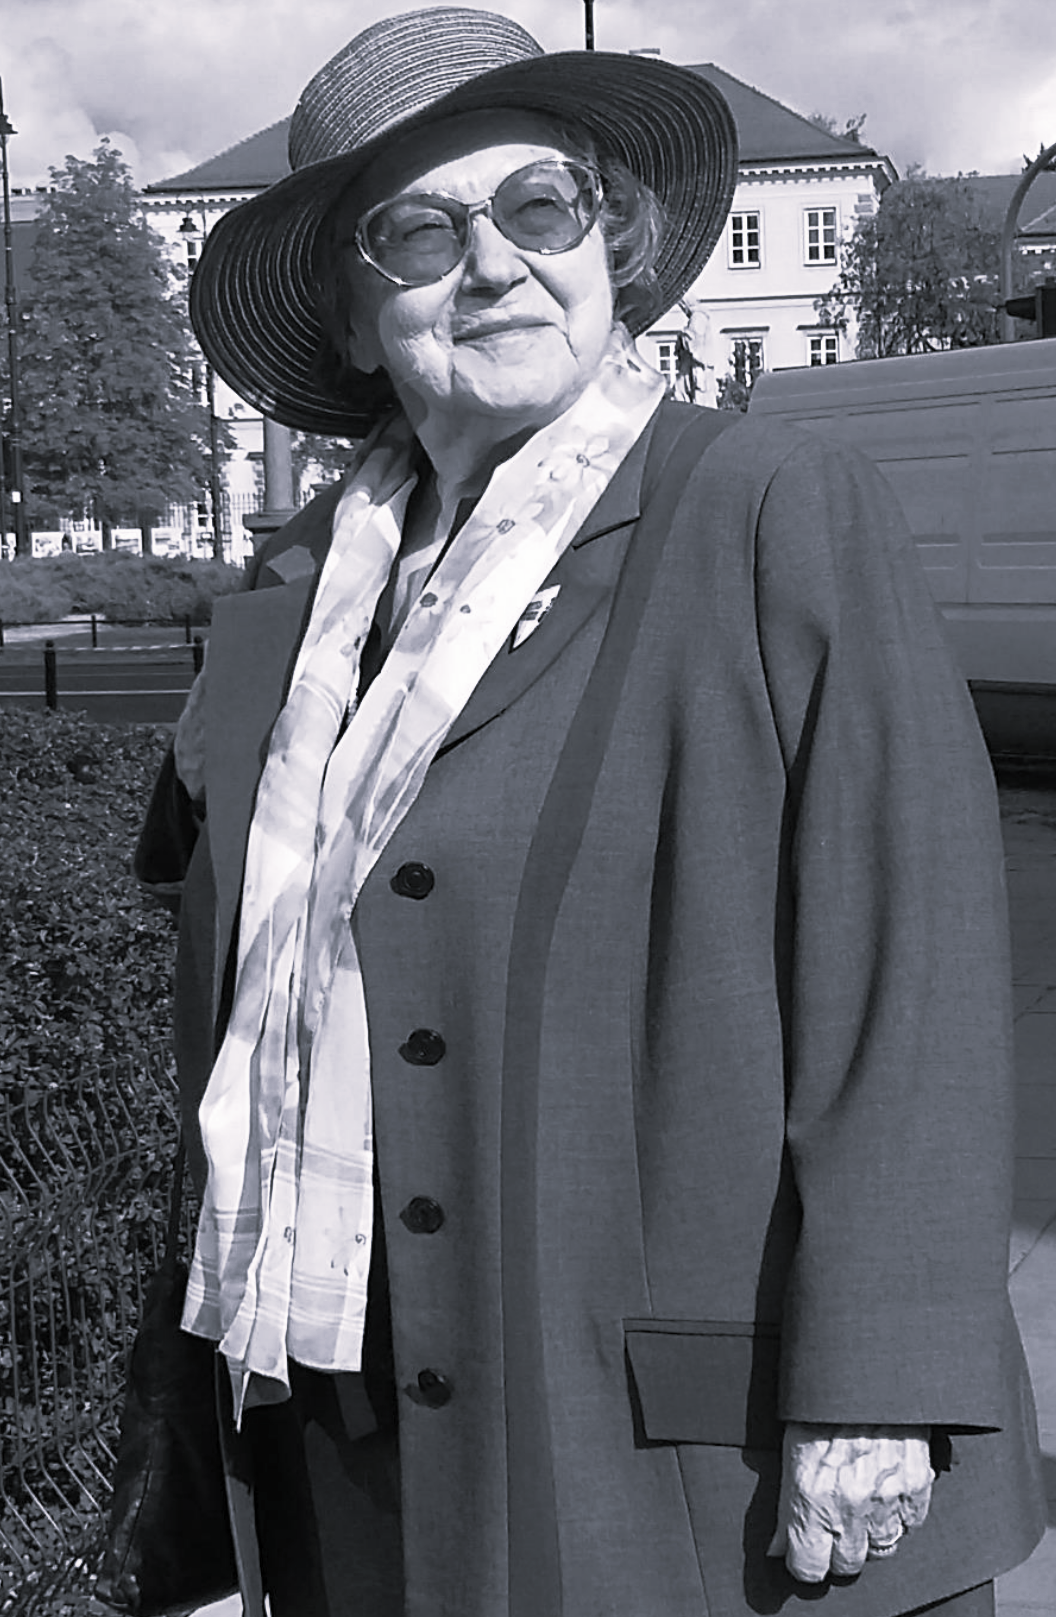 Czarnobiałe zdjęcie przedstawiające na tle budynku kobietę w okularach przeciwsłonecznych i kapeluszu. Kobieta ubrana jest w płaszcz oraz szalik. 